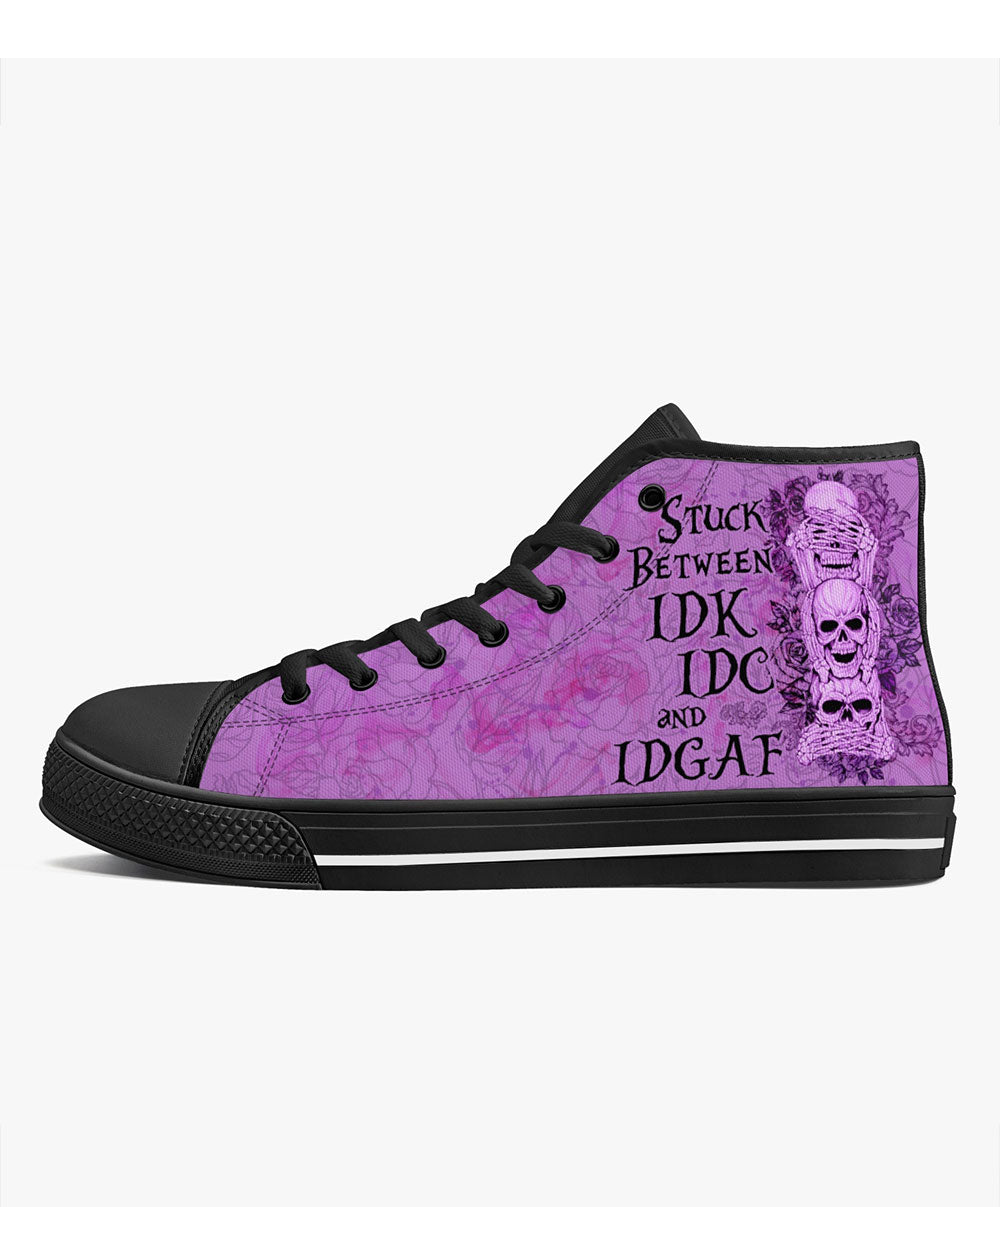 Stuck Between IDK IDC IDGAF Pink High Top Sneaker